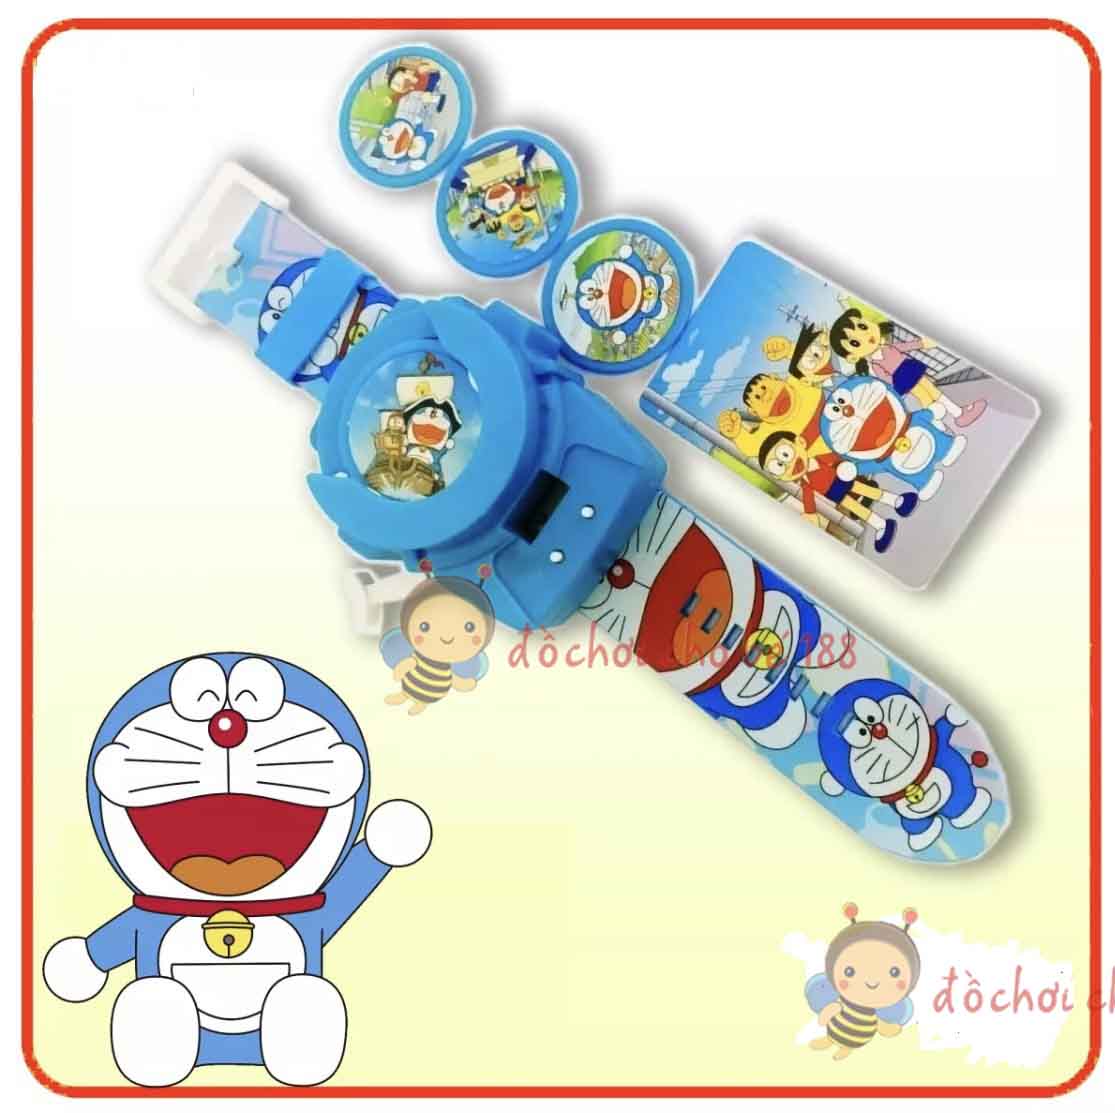 Đồ chơi đồng hồ đeo tay Doraemon spider man người nhện có bắn đĩa, giúp bé luyện tập thói quen xem giờ mỗi ngày